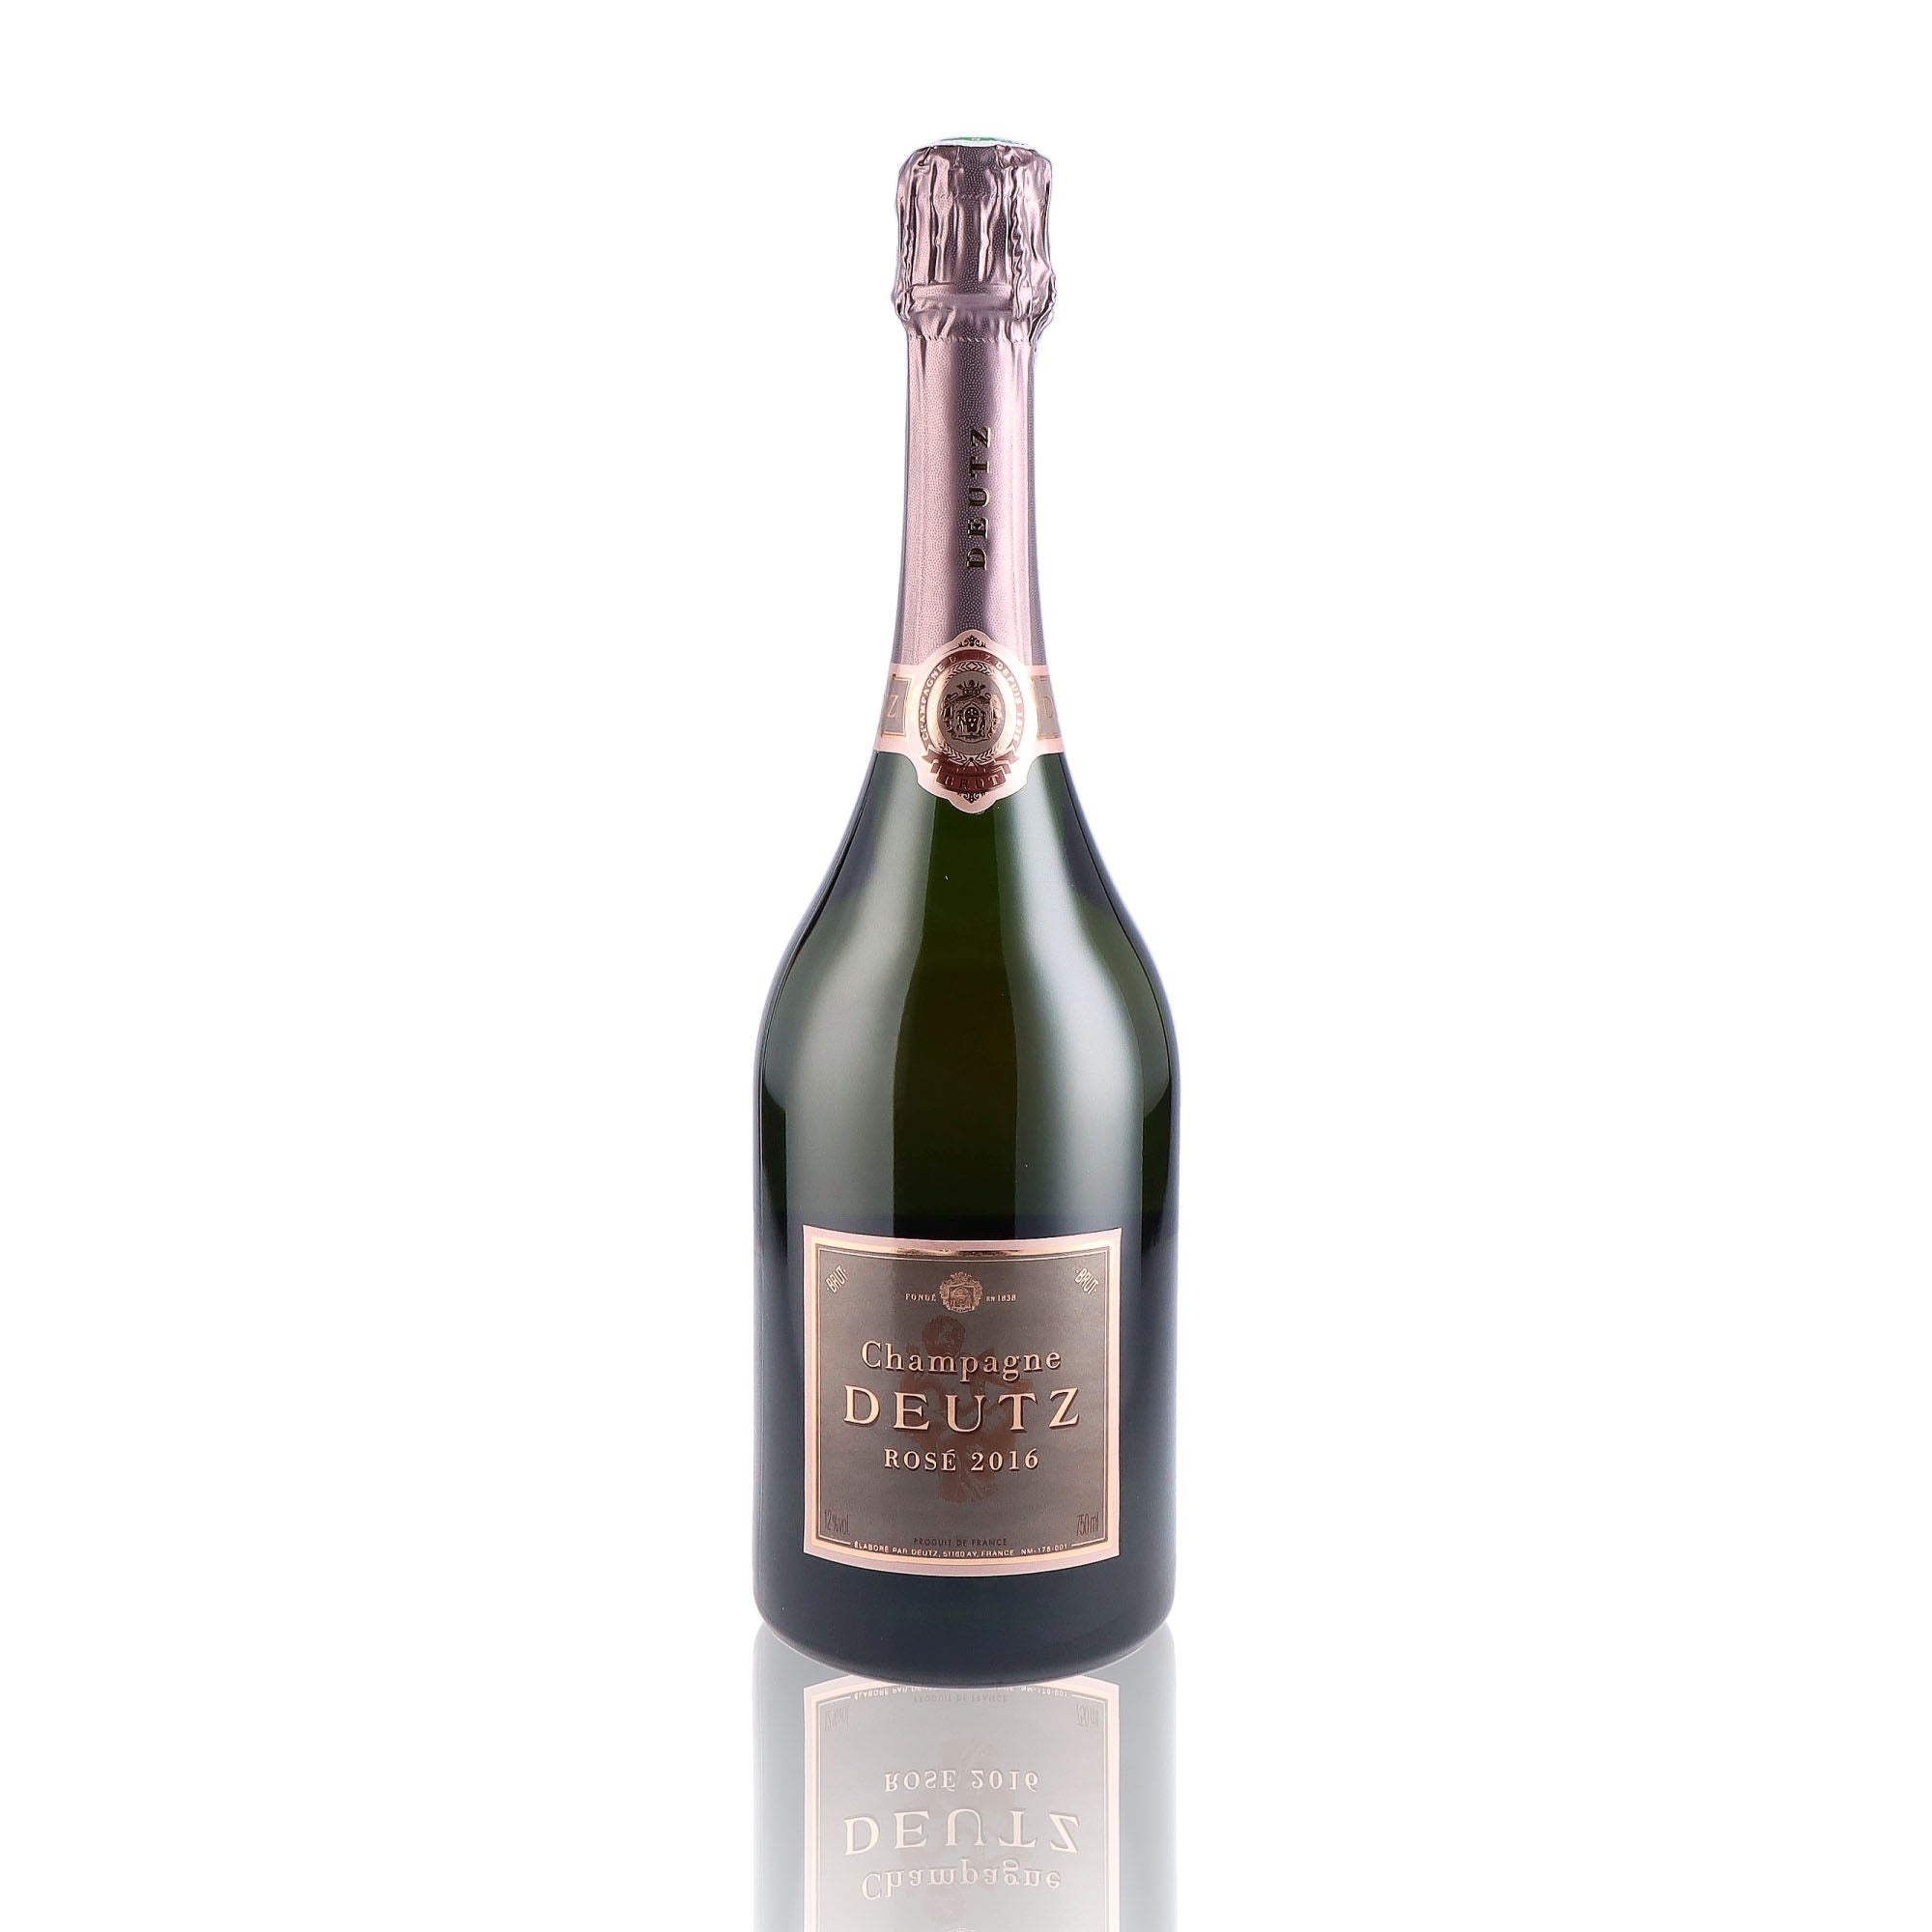 Une bouteille de champagne de la marque Deutz, de type rosé, millésime 2016.